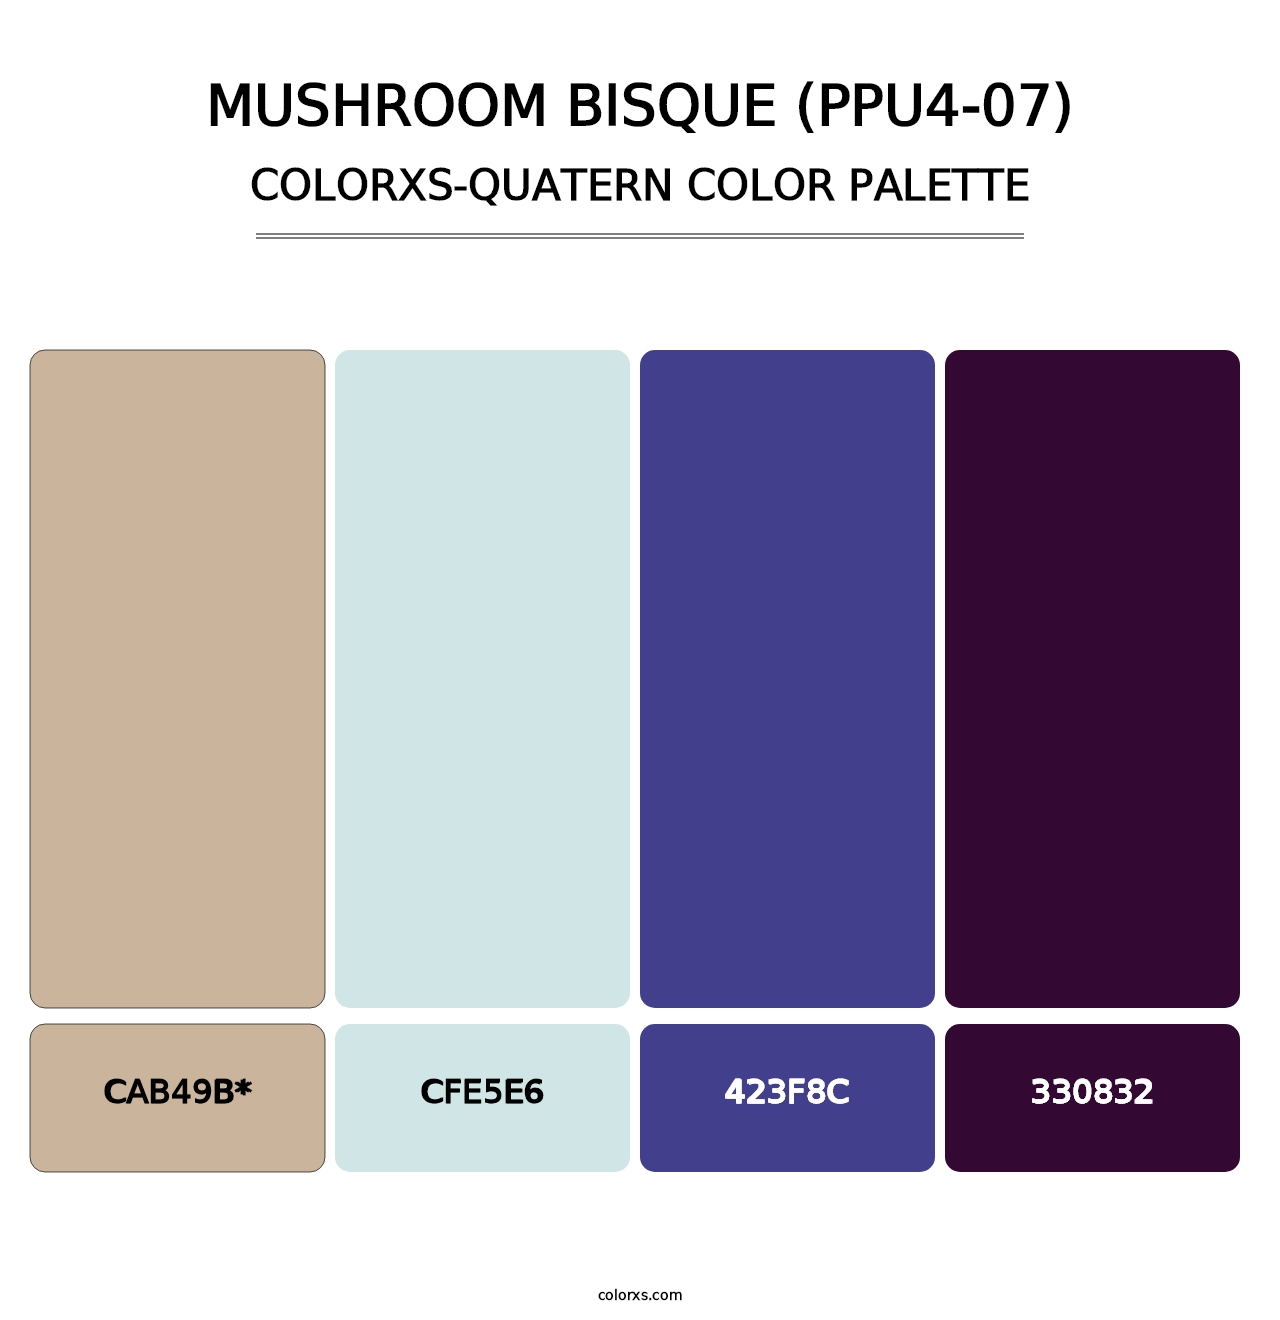 Mushroom Bisque (PPU4-07) - Colorxs Quatern Palette